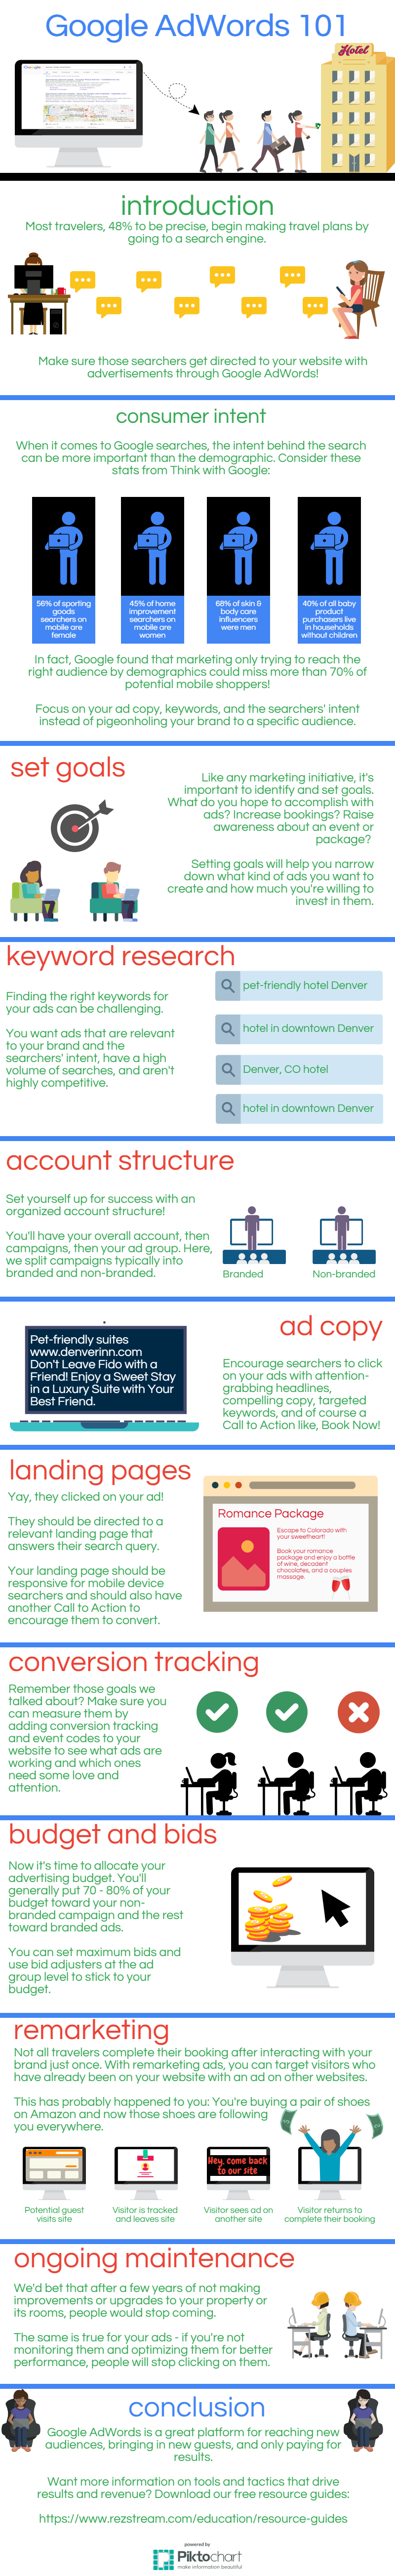 Google AdWords 101 infographic